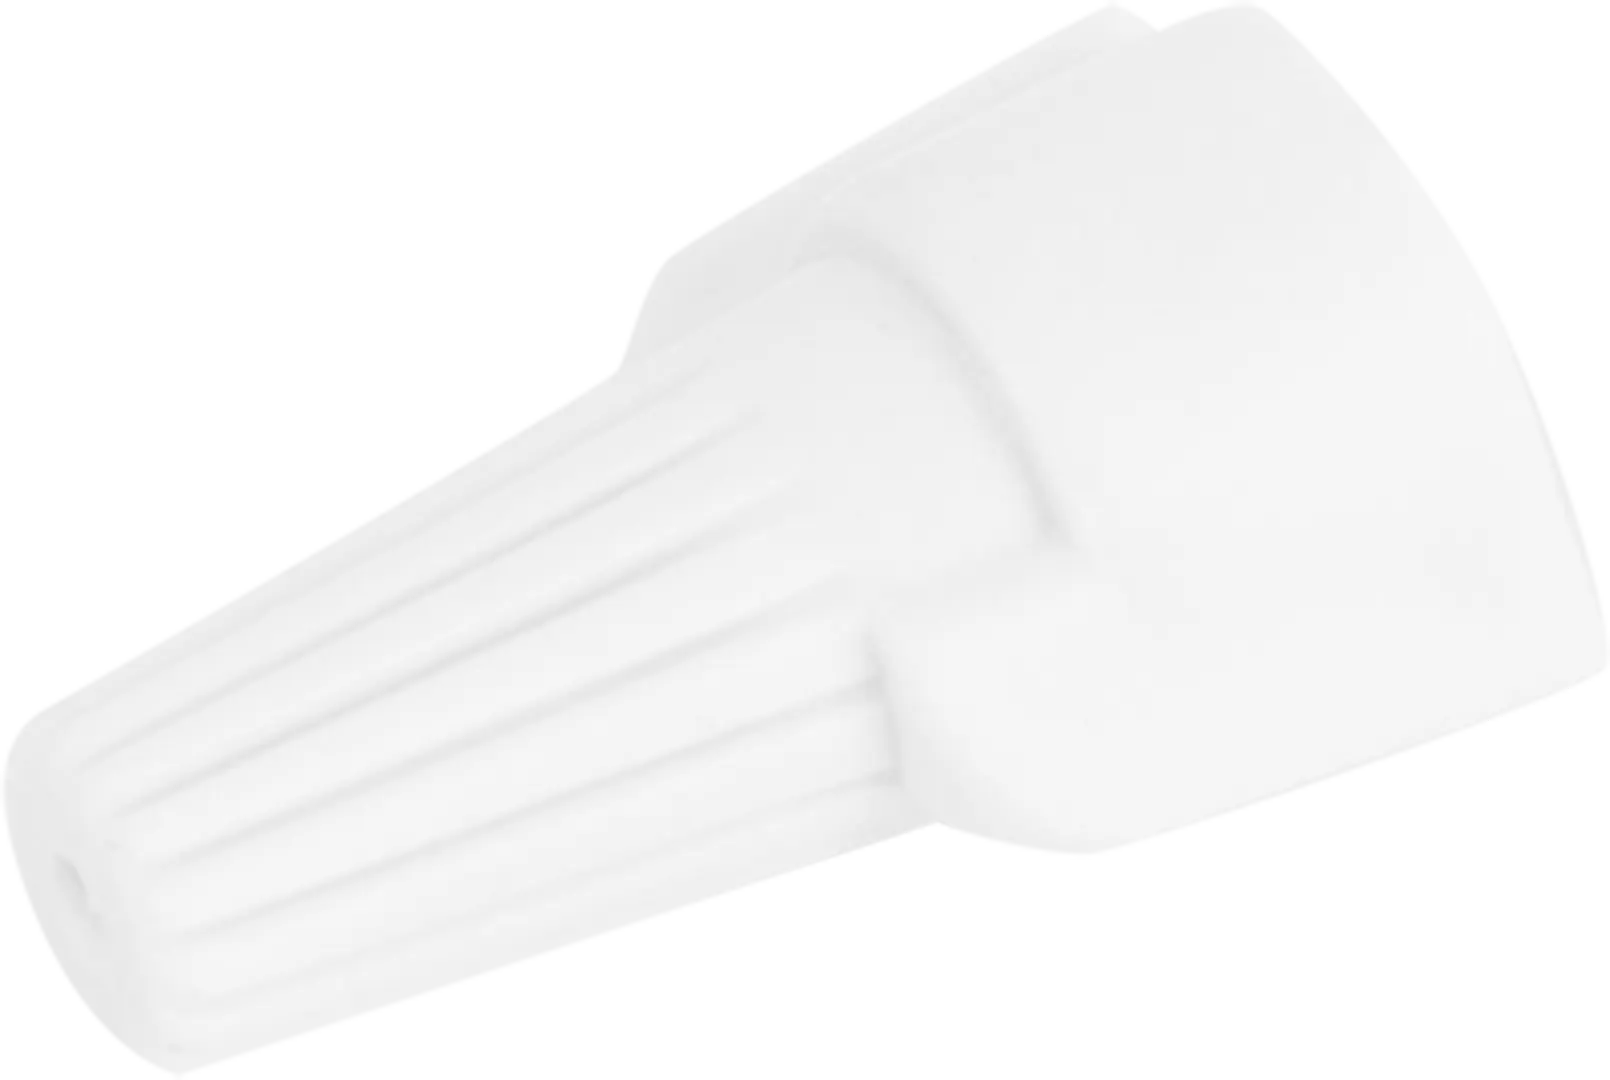 Соединительный изолирующий зажим Duwi СИЗ-Л-3 5-15 мм цвет белый 10 шт. соединительный изолирующий зажим duwi сиз 5 4 5 14 мм красный 10 шт